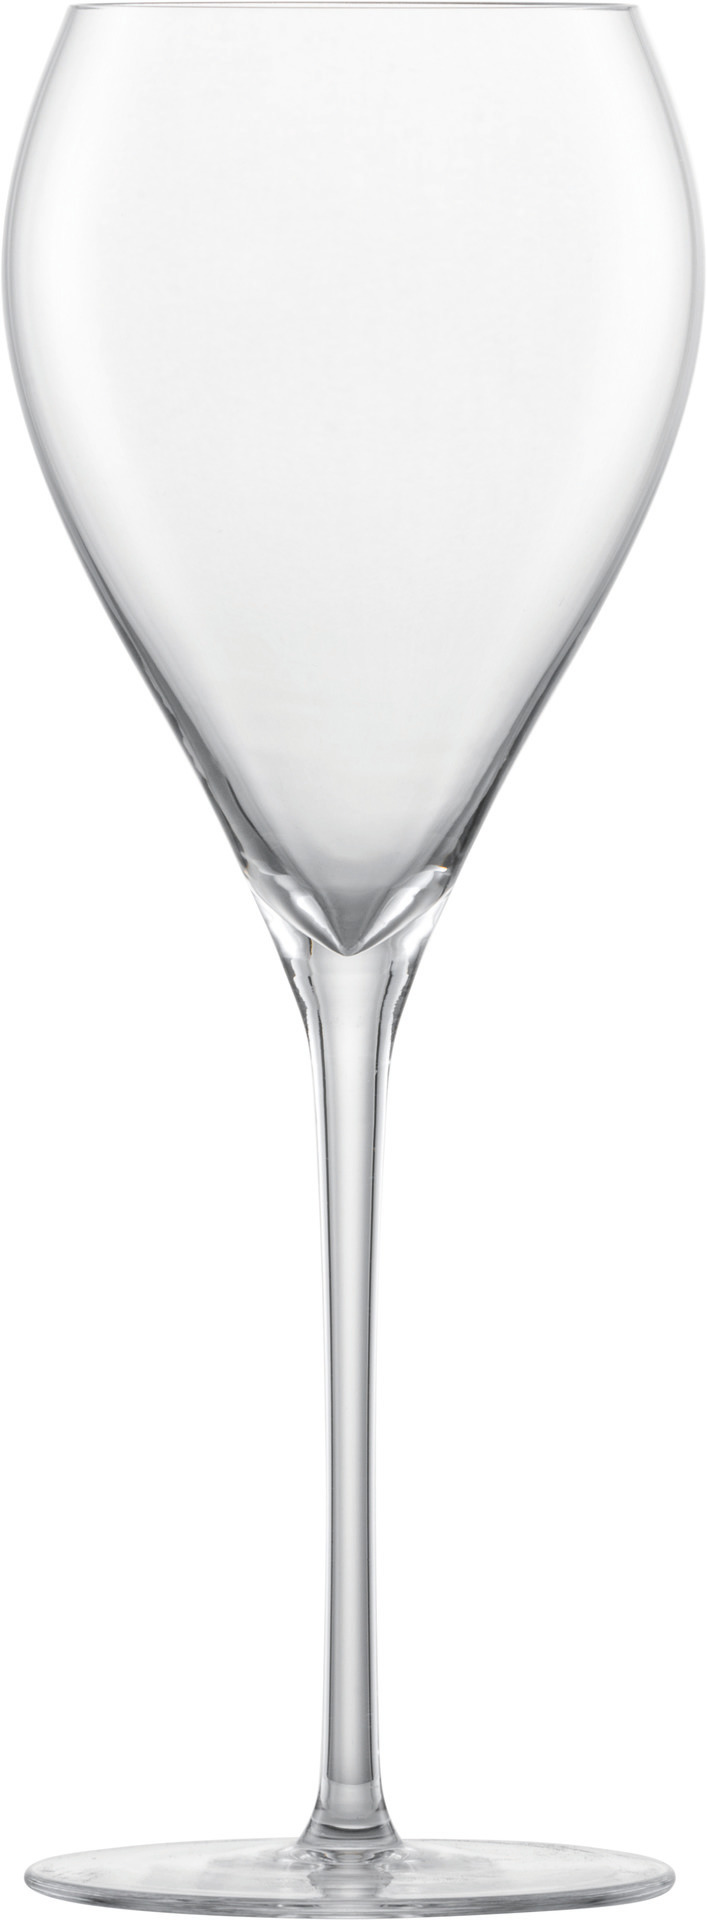 Schaumweinglas Premium mit MP Bar Special Gr. 772